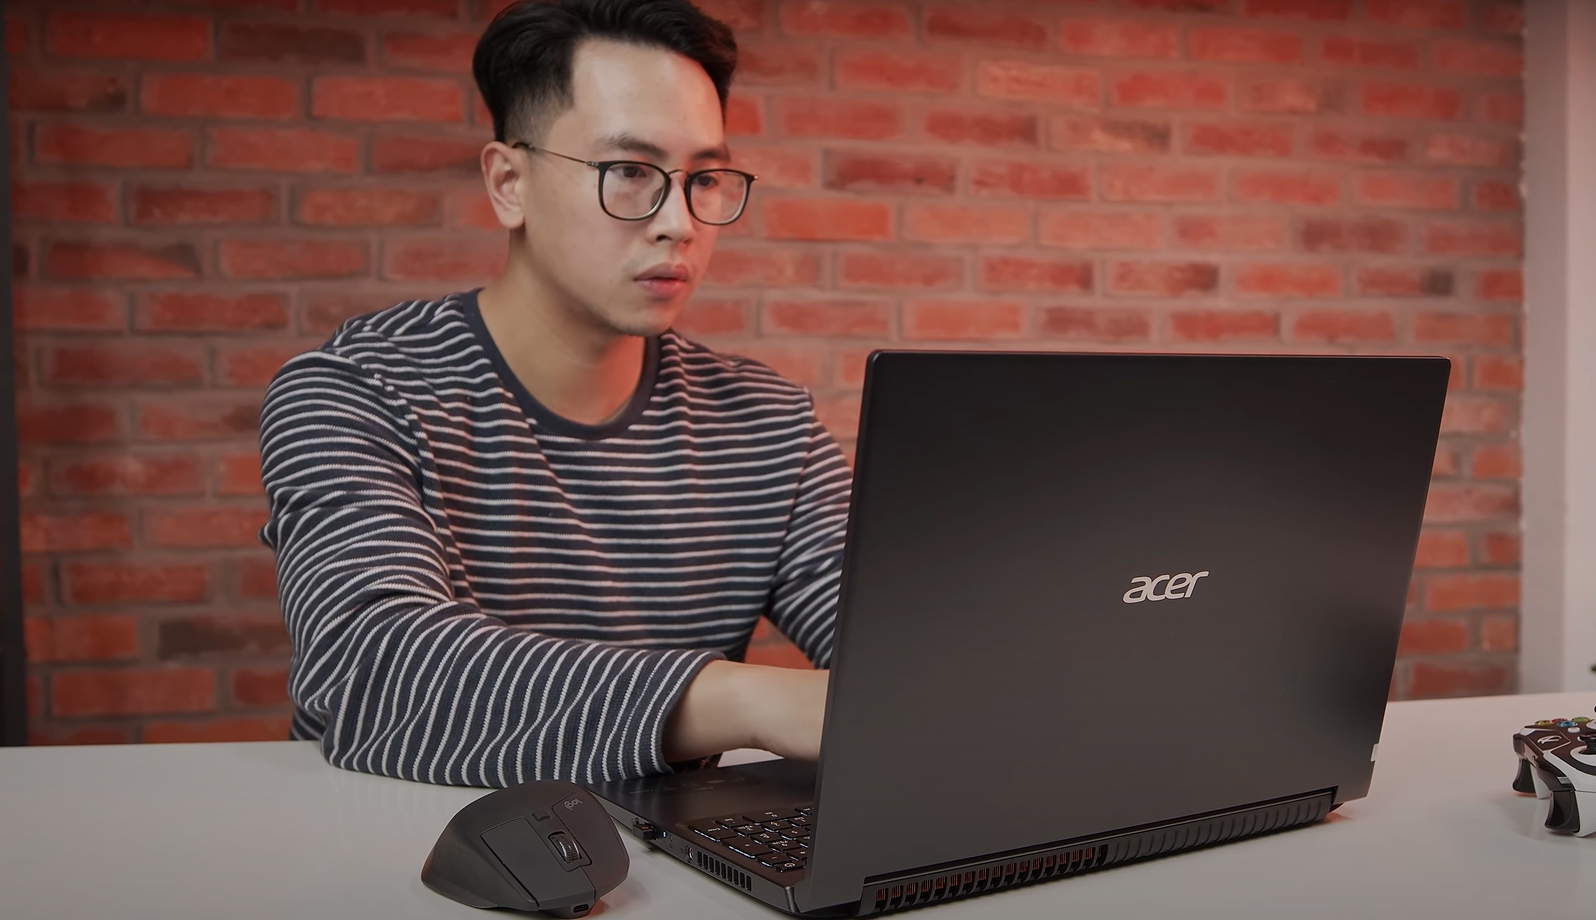 Thiết kế tối giản của Acer Aspire 7 Gaming đi kèm với hiệu năng đủ dùng